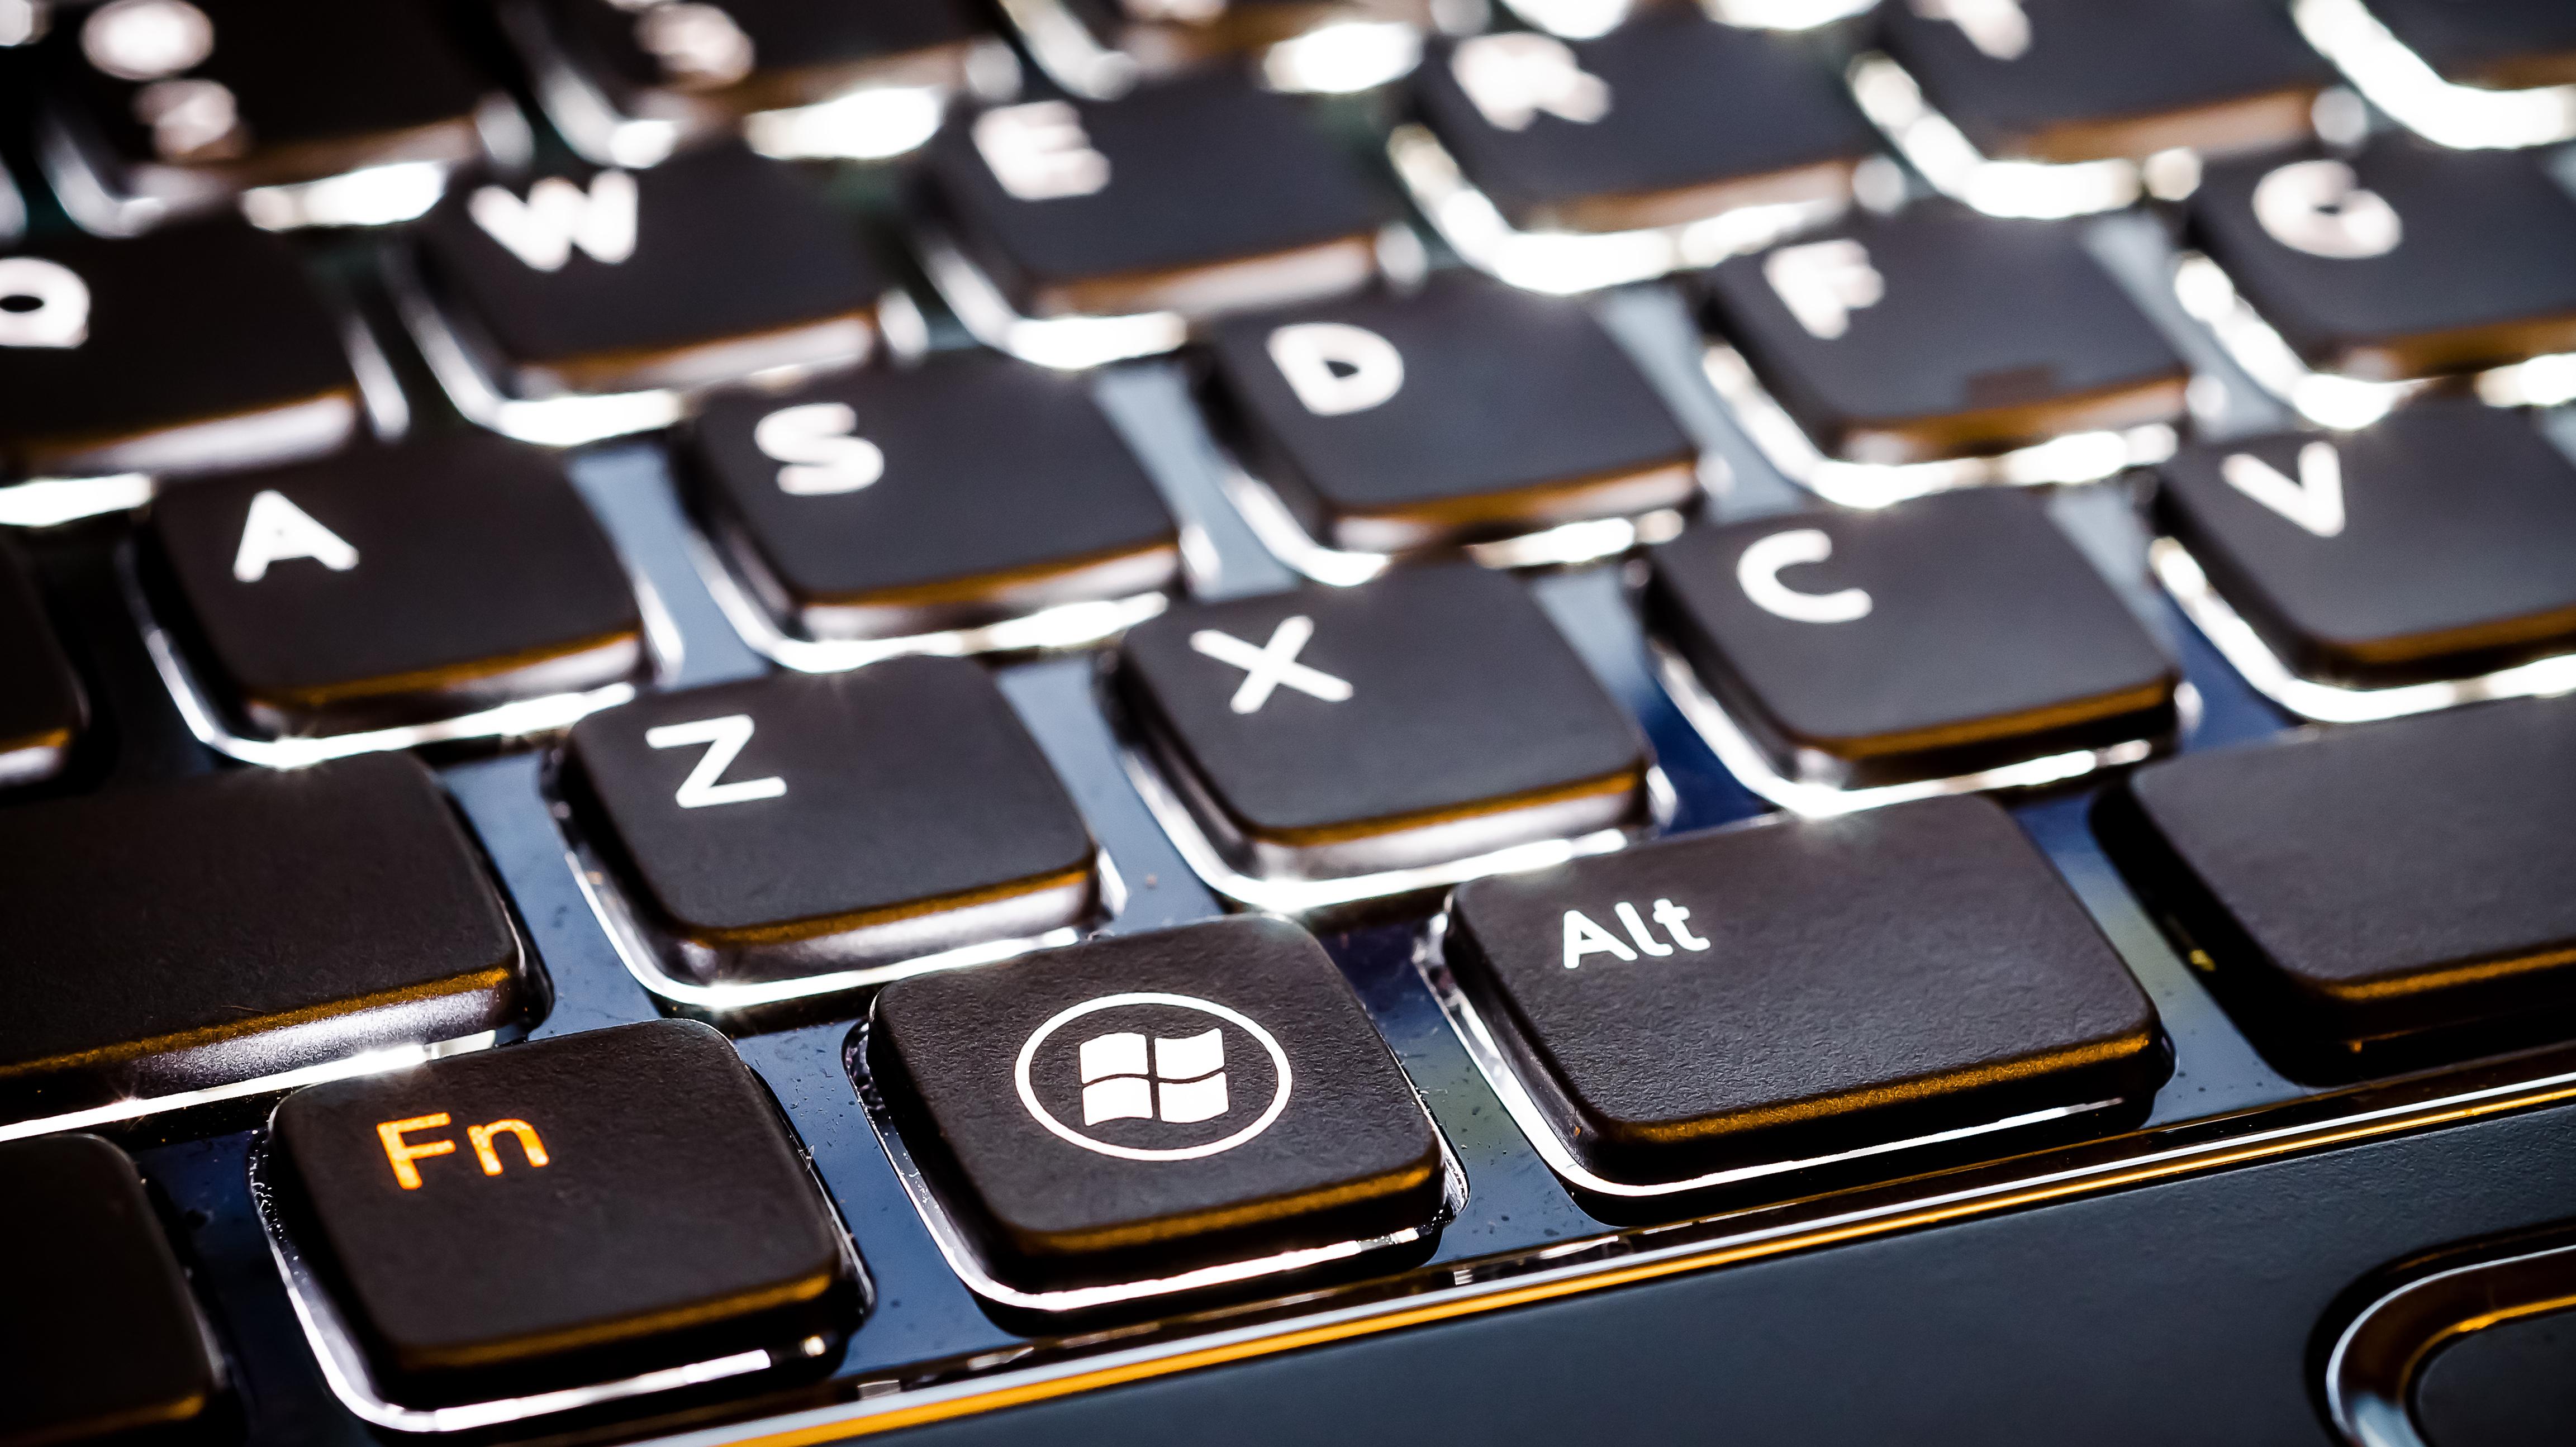 Überprüfen Sie Ihre Tastatur auf Sperrtasten
Stellen Sie sicher, dass keine der Tasten auf Ihrer Tastatur gesperrt ist